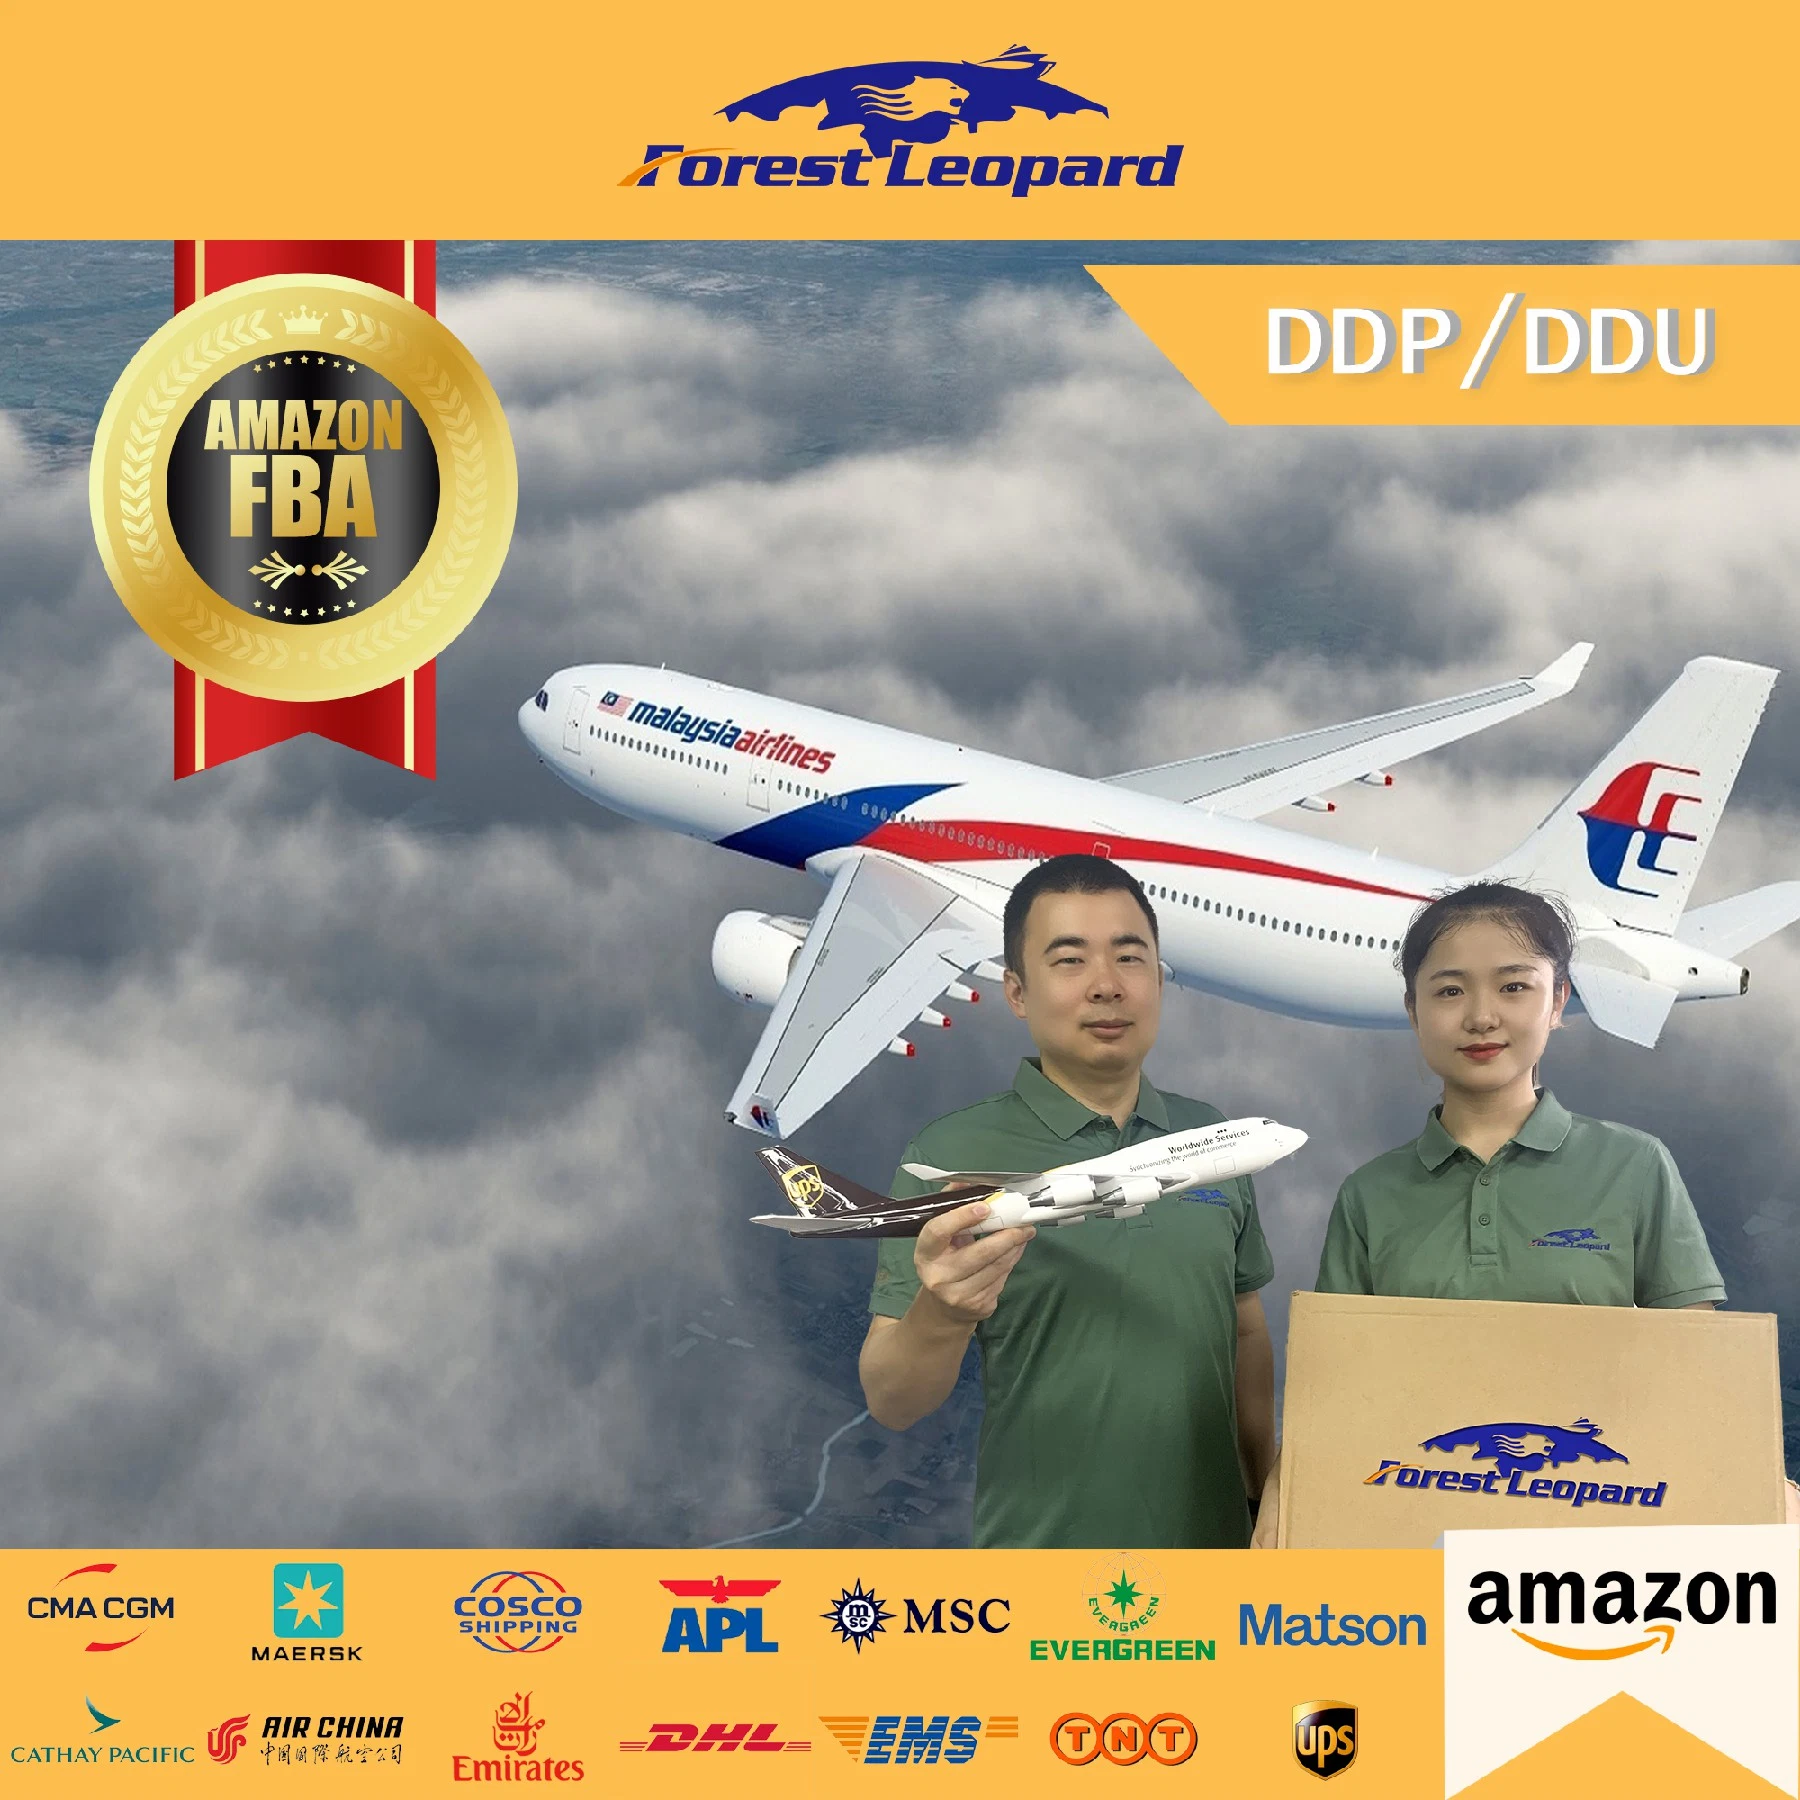 أسرع خدمة DDP Express من UPS/DHL/FedEx/TNT إلى الولايات المتحدة الأمريكية من الصين